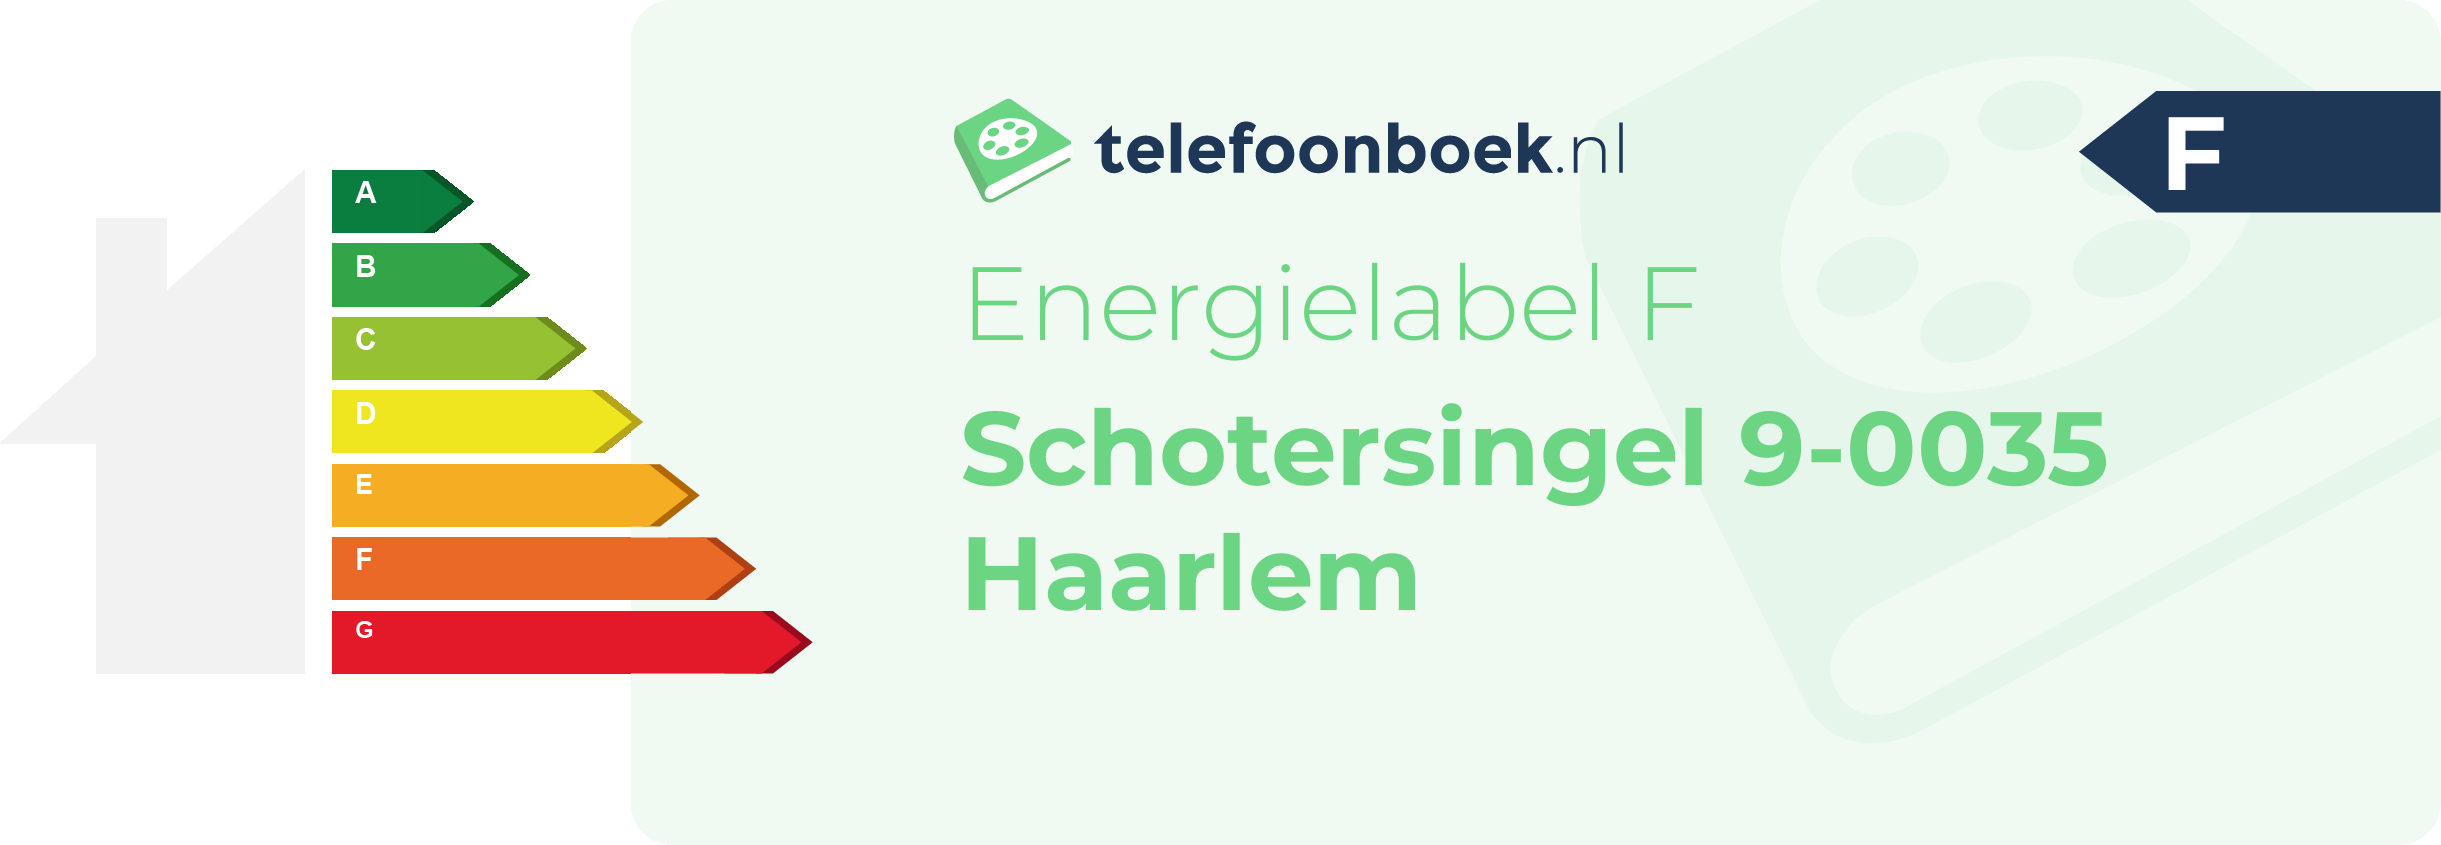 Energielabel Schotersingel 9-0035 Haarlem